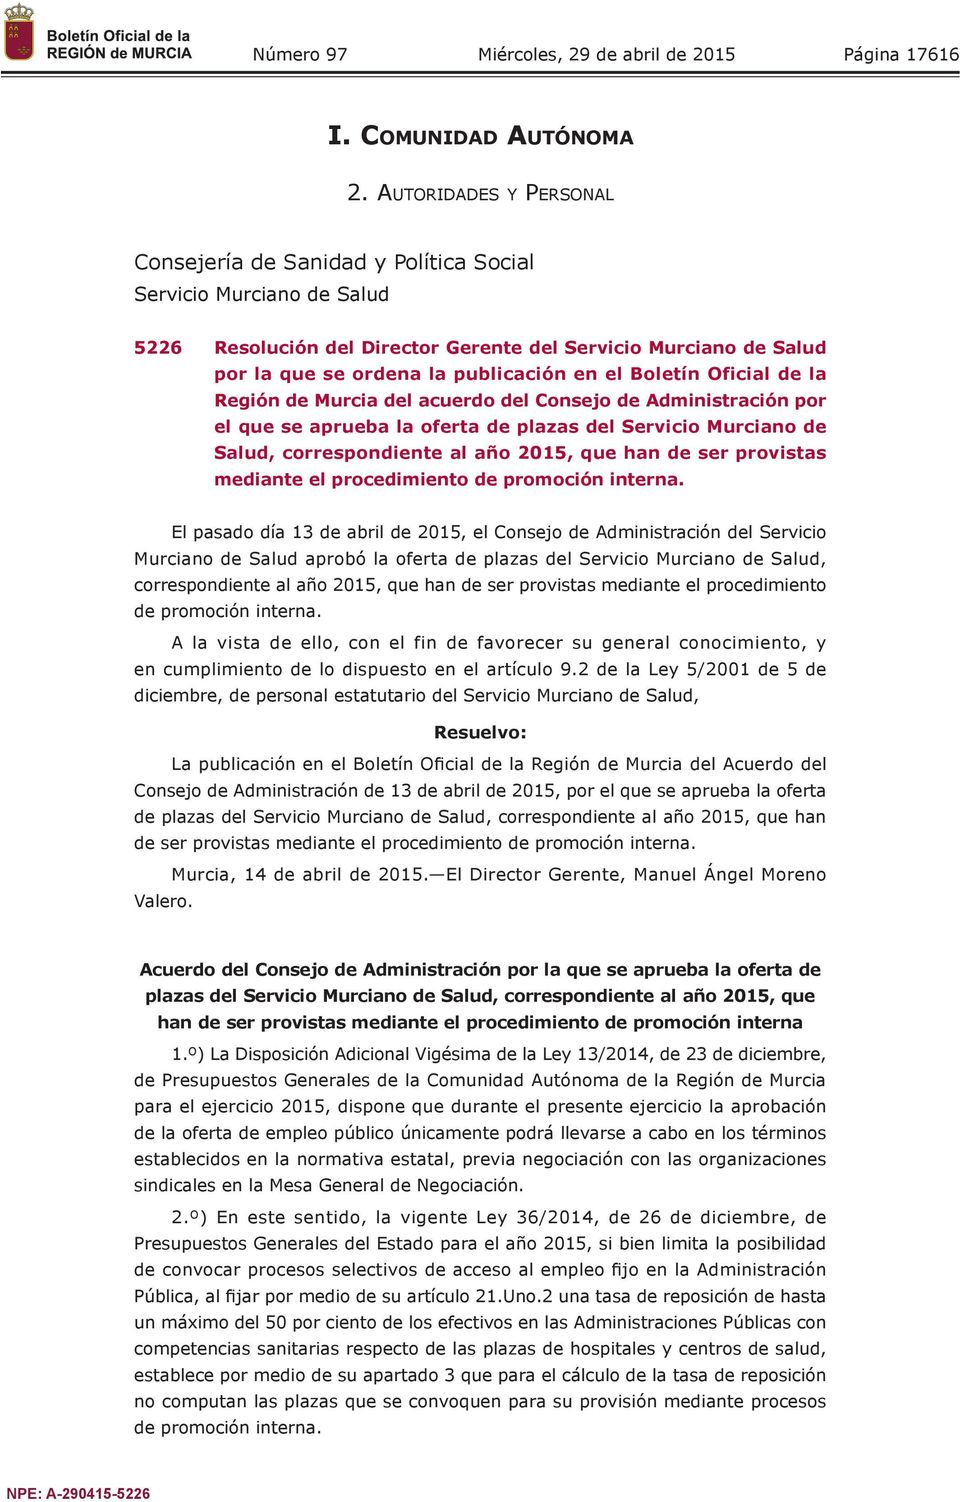 Boletín Oficial de la Región de Murcia del acuerdo del Consejo de Administración por el que se aprueba la oferta de plazas del Servicio Murciano de Salud, correspondiente al año 2015, que han de ser